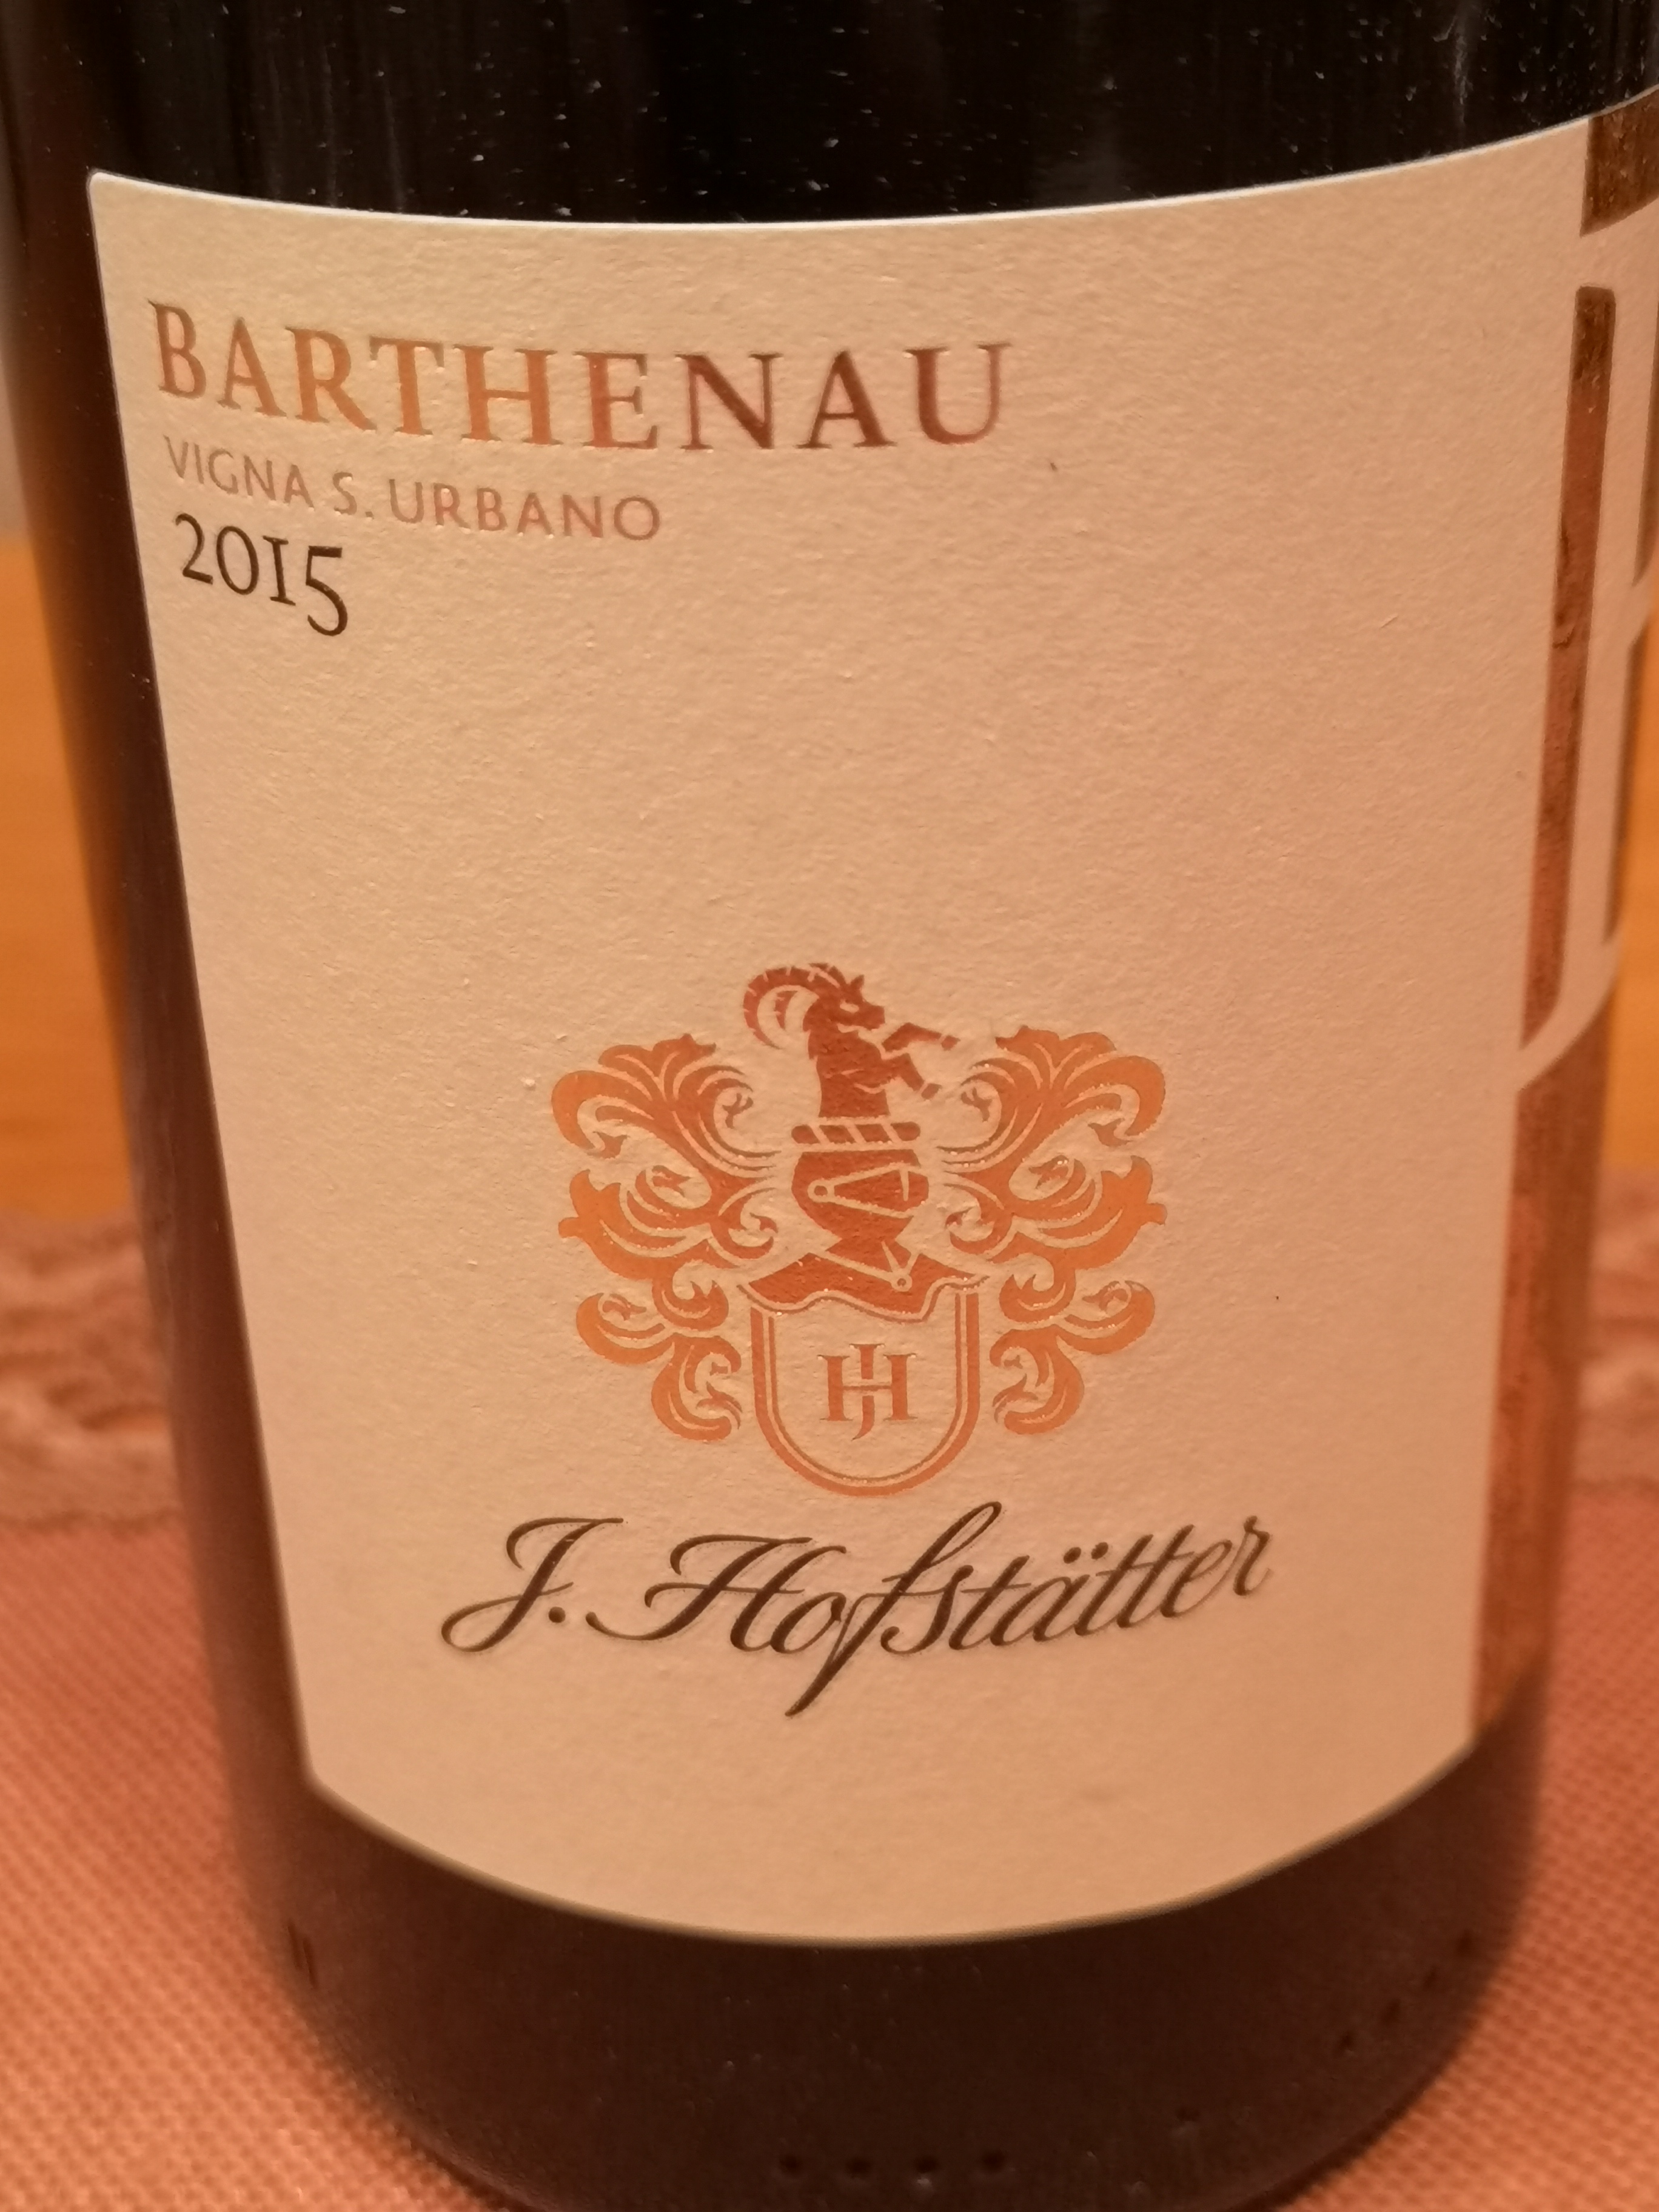 2015 Pinot Nero Barthenau Vigna S. Urbano | Hofstätter